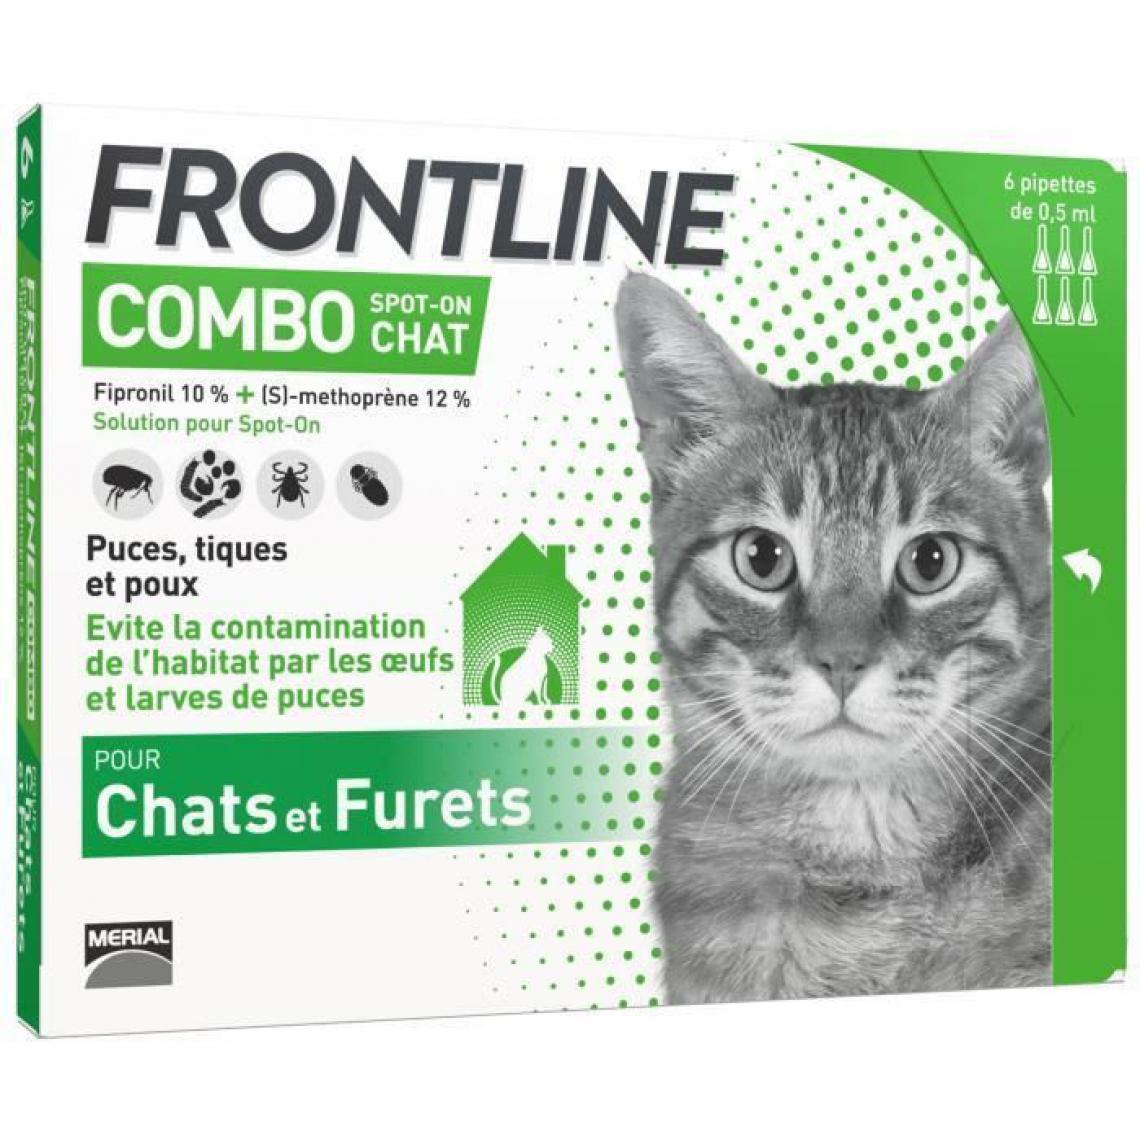 Boehringer Ingelheim - FRONTLINE Combo chat - Anti-puces et anti-tiques pour chat - 6 pipettes - Anti-parasitaire pour chat